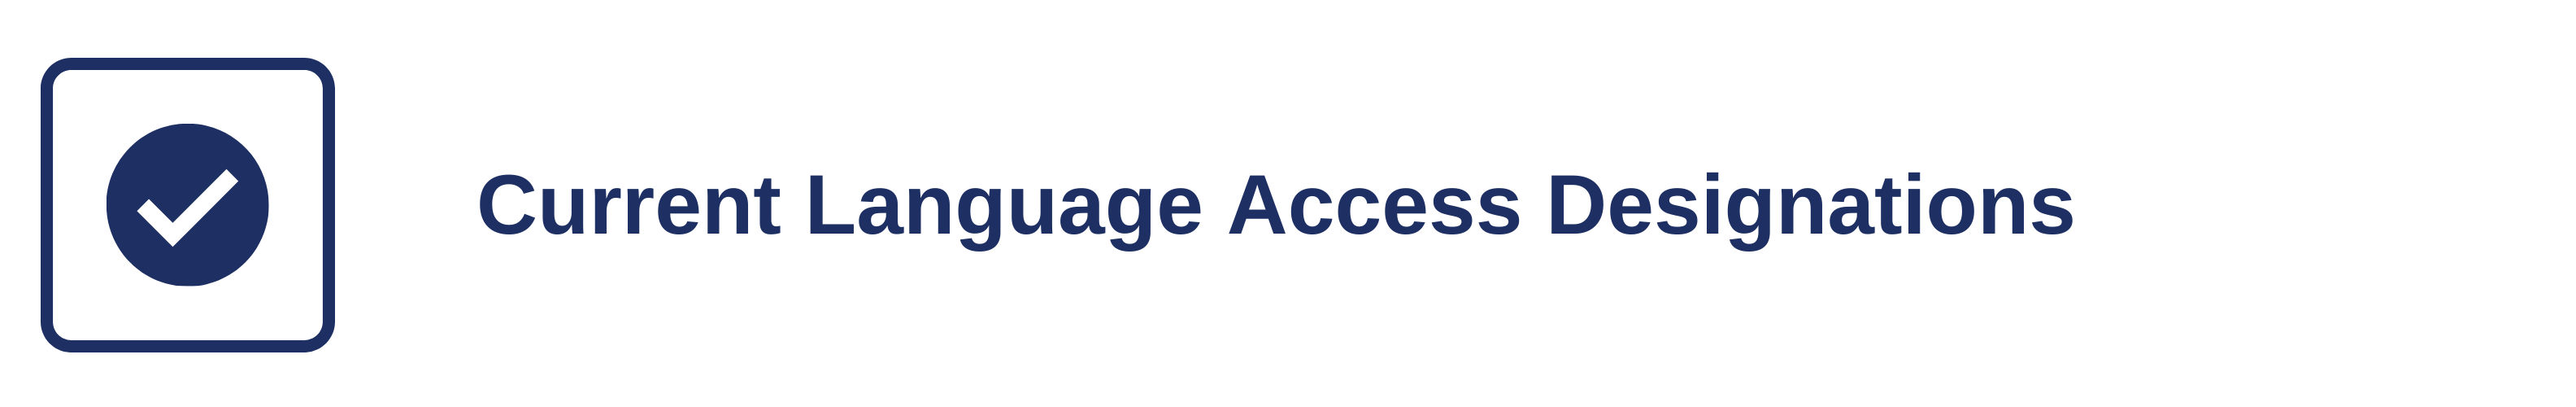 Current Language Access Designations